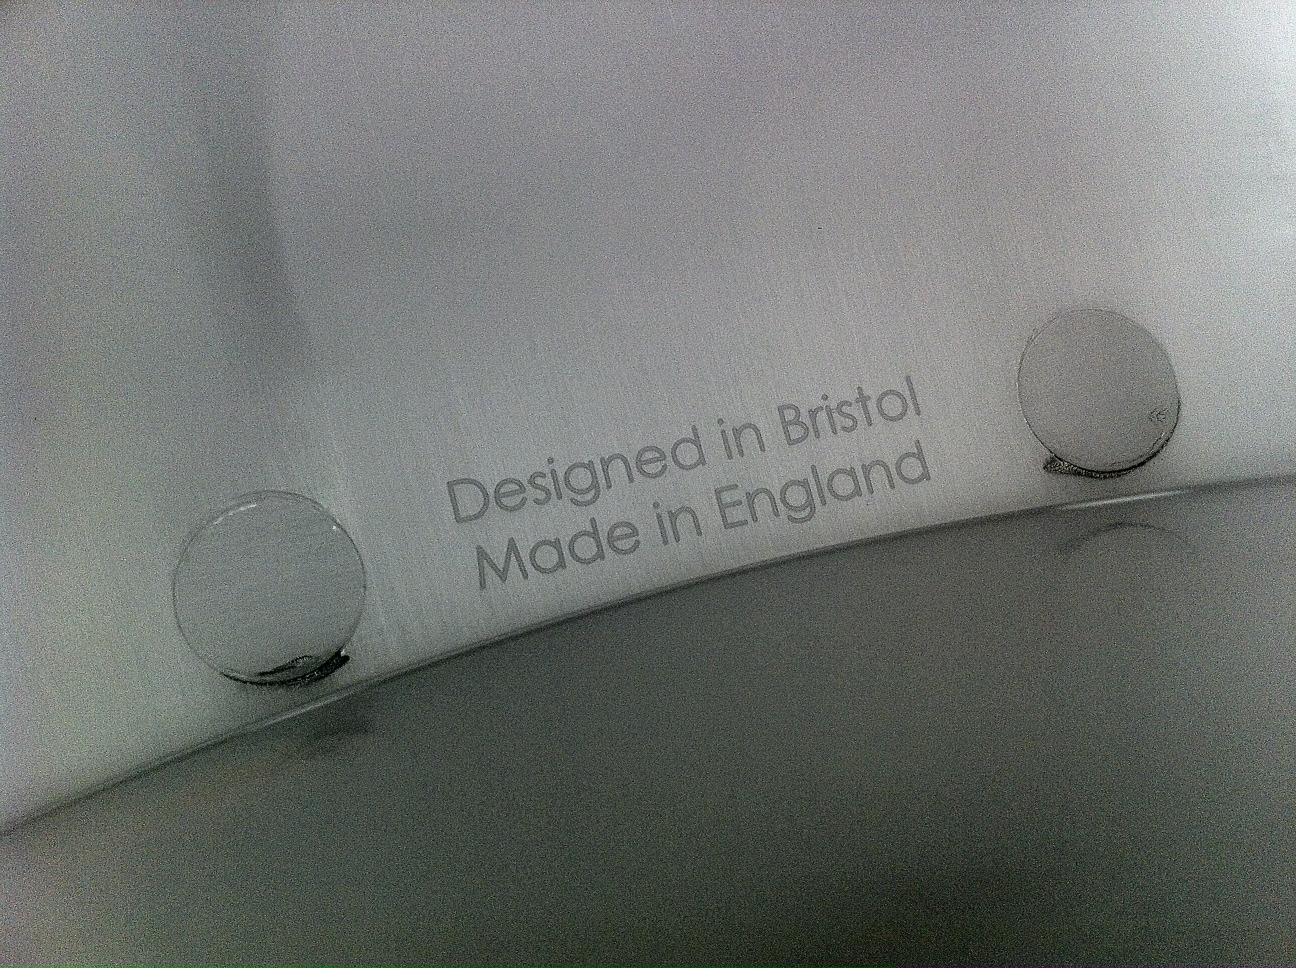 UK manufacturing